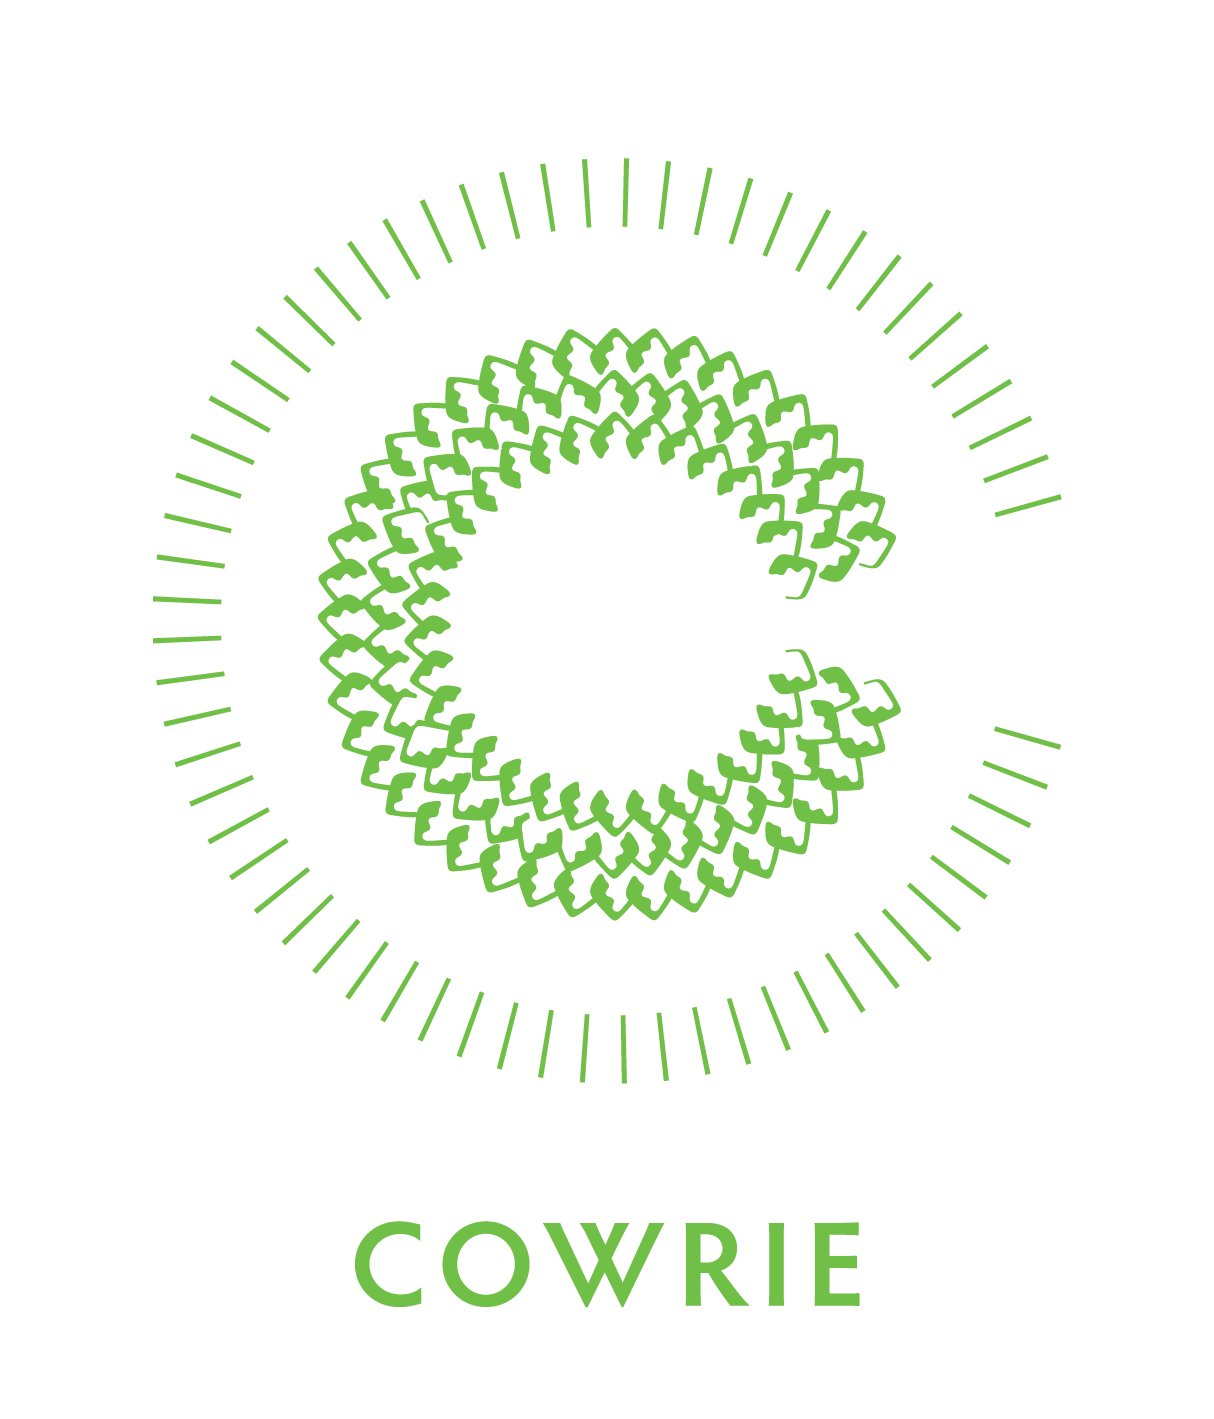 The COWRIE Initiative logo